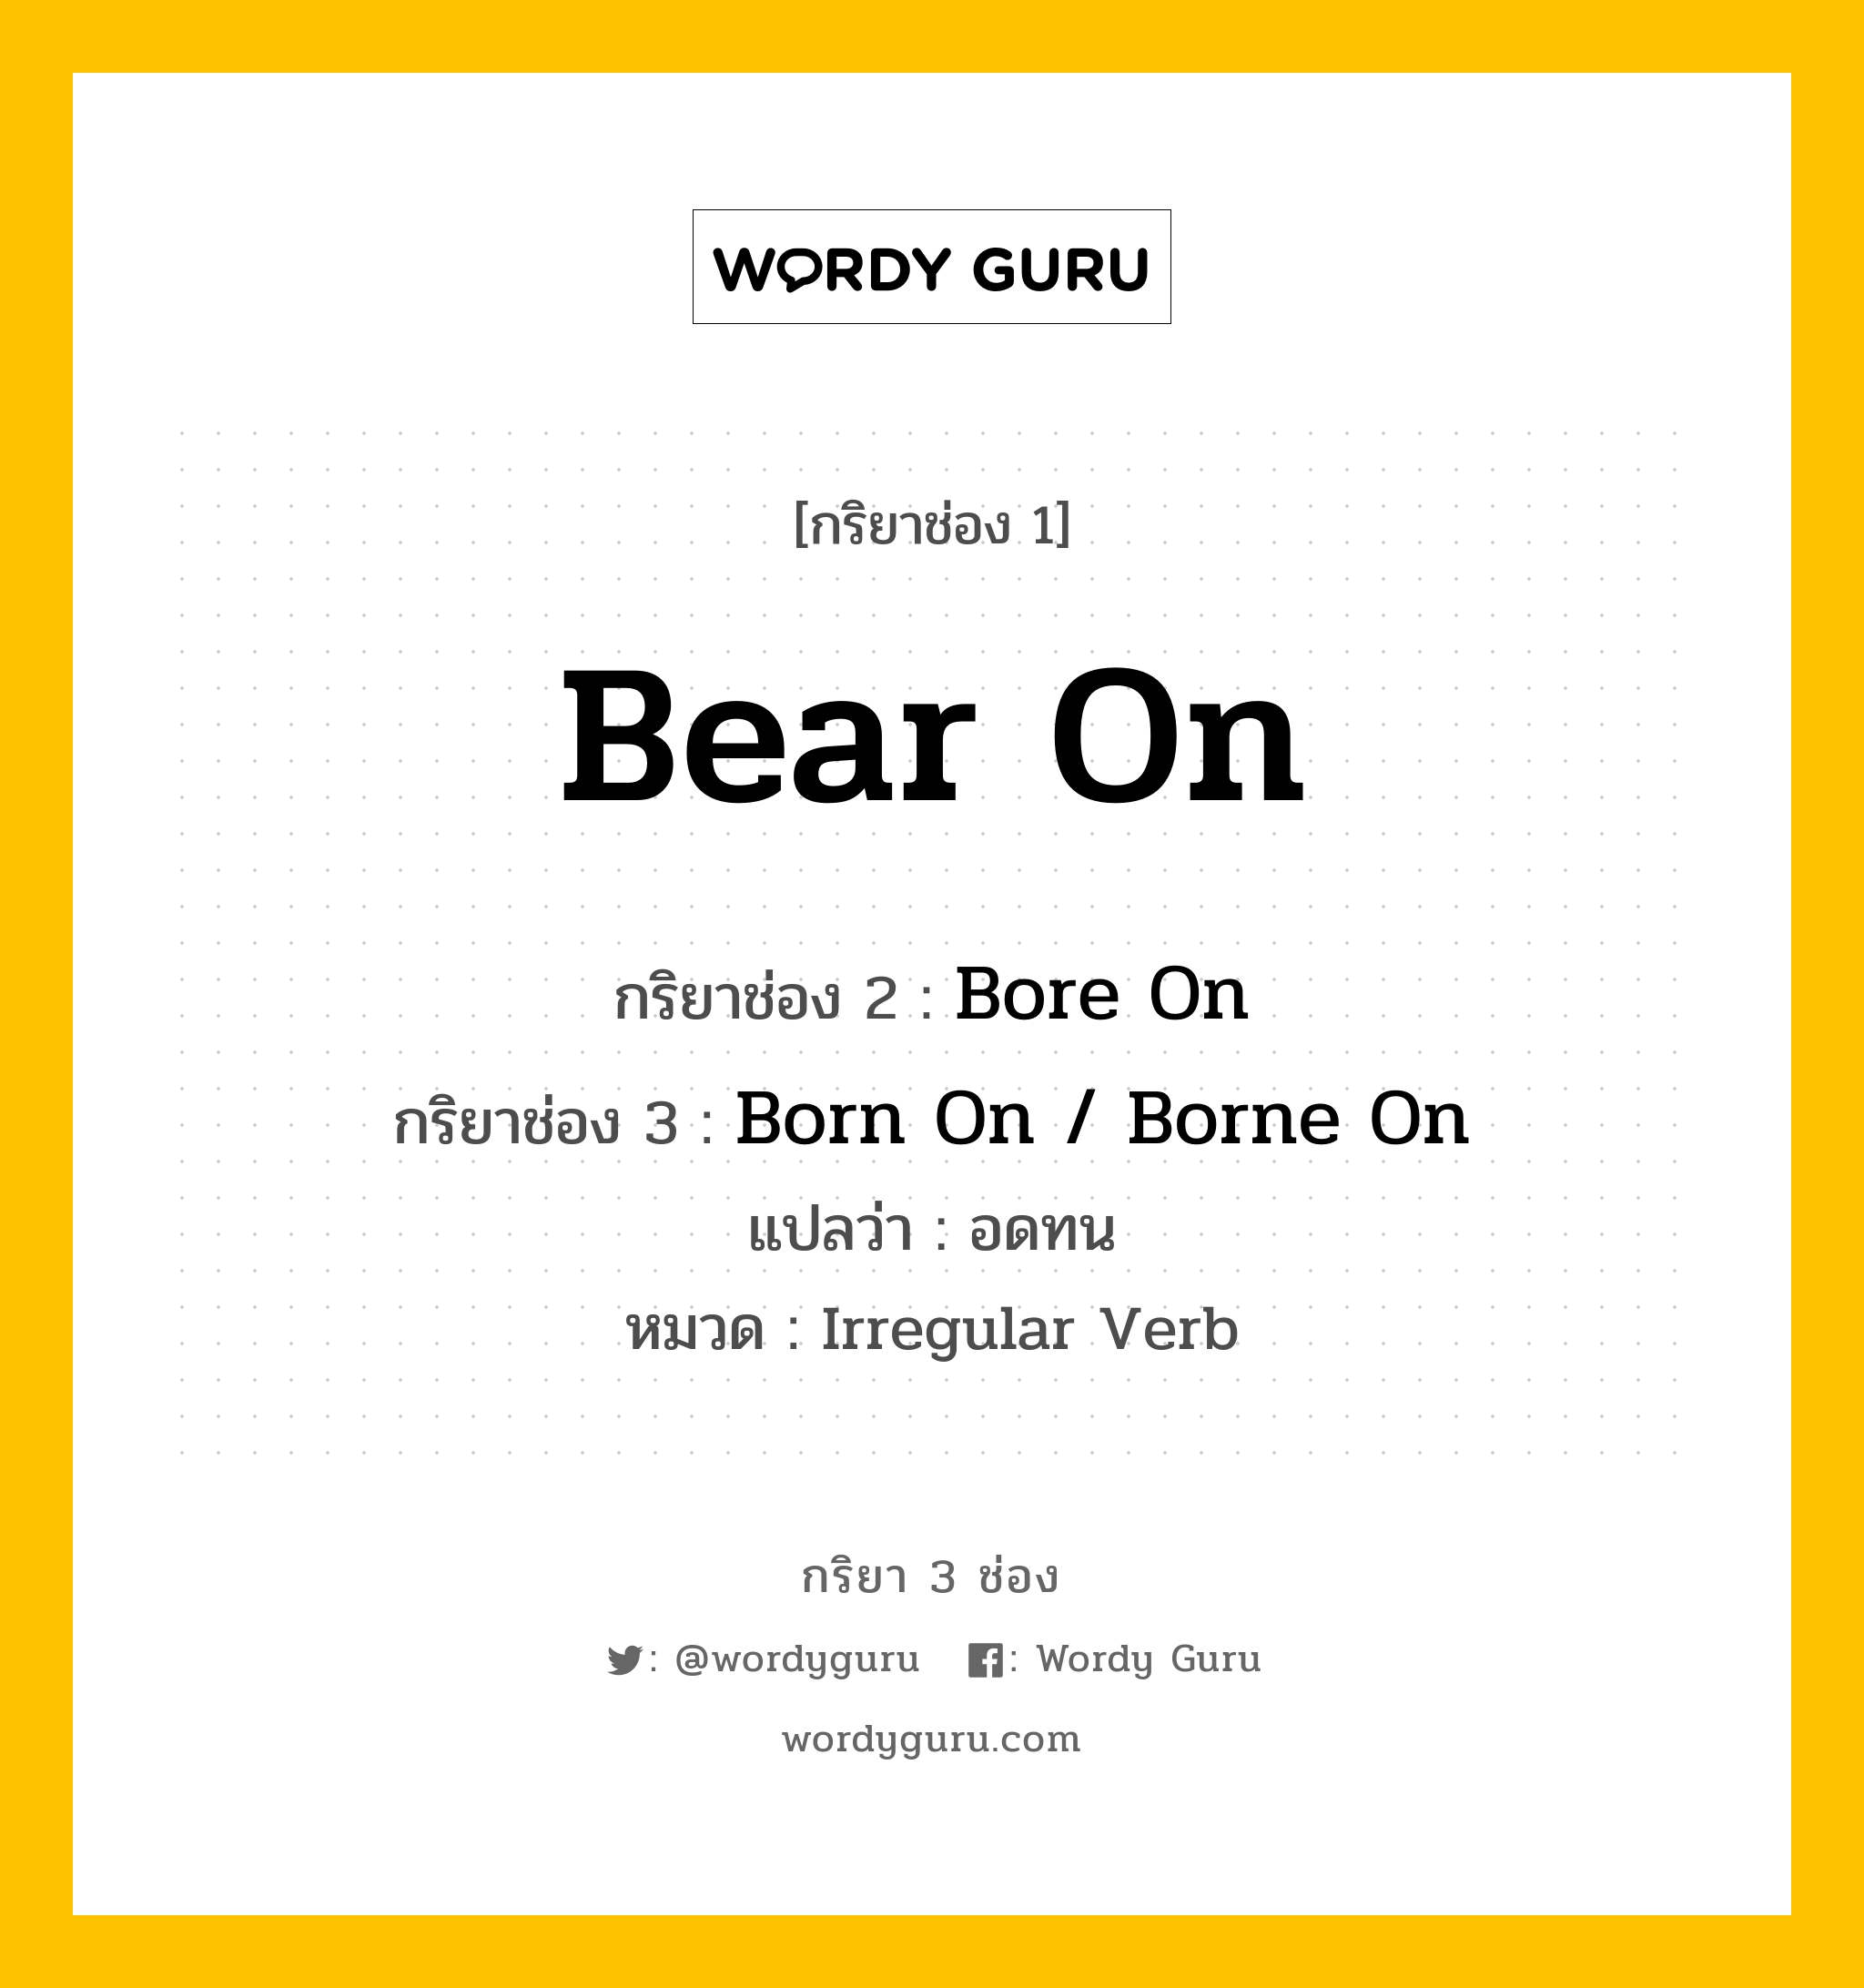 กริยา 3 ช่อง: Bear On ช่อง 2 Bear On ช่อง 3 คืออะไร, กริยาช่อง 1 Bear On กริยาช่อง 2 Bore On กริยาช่อง 3 Born On / Borne On แปลว่า อดทน หมวด Irregular Verb หมวด Irregular Verb